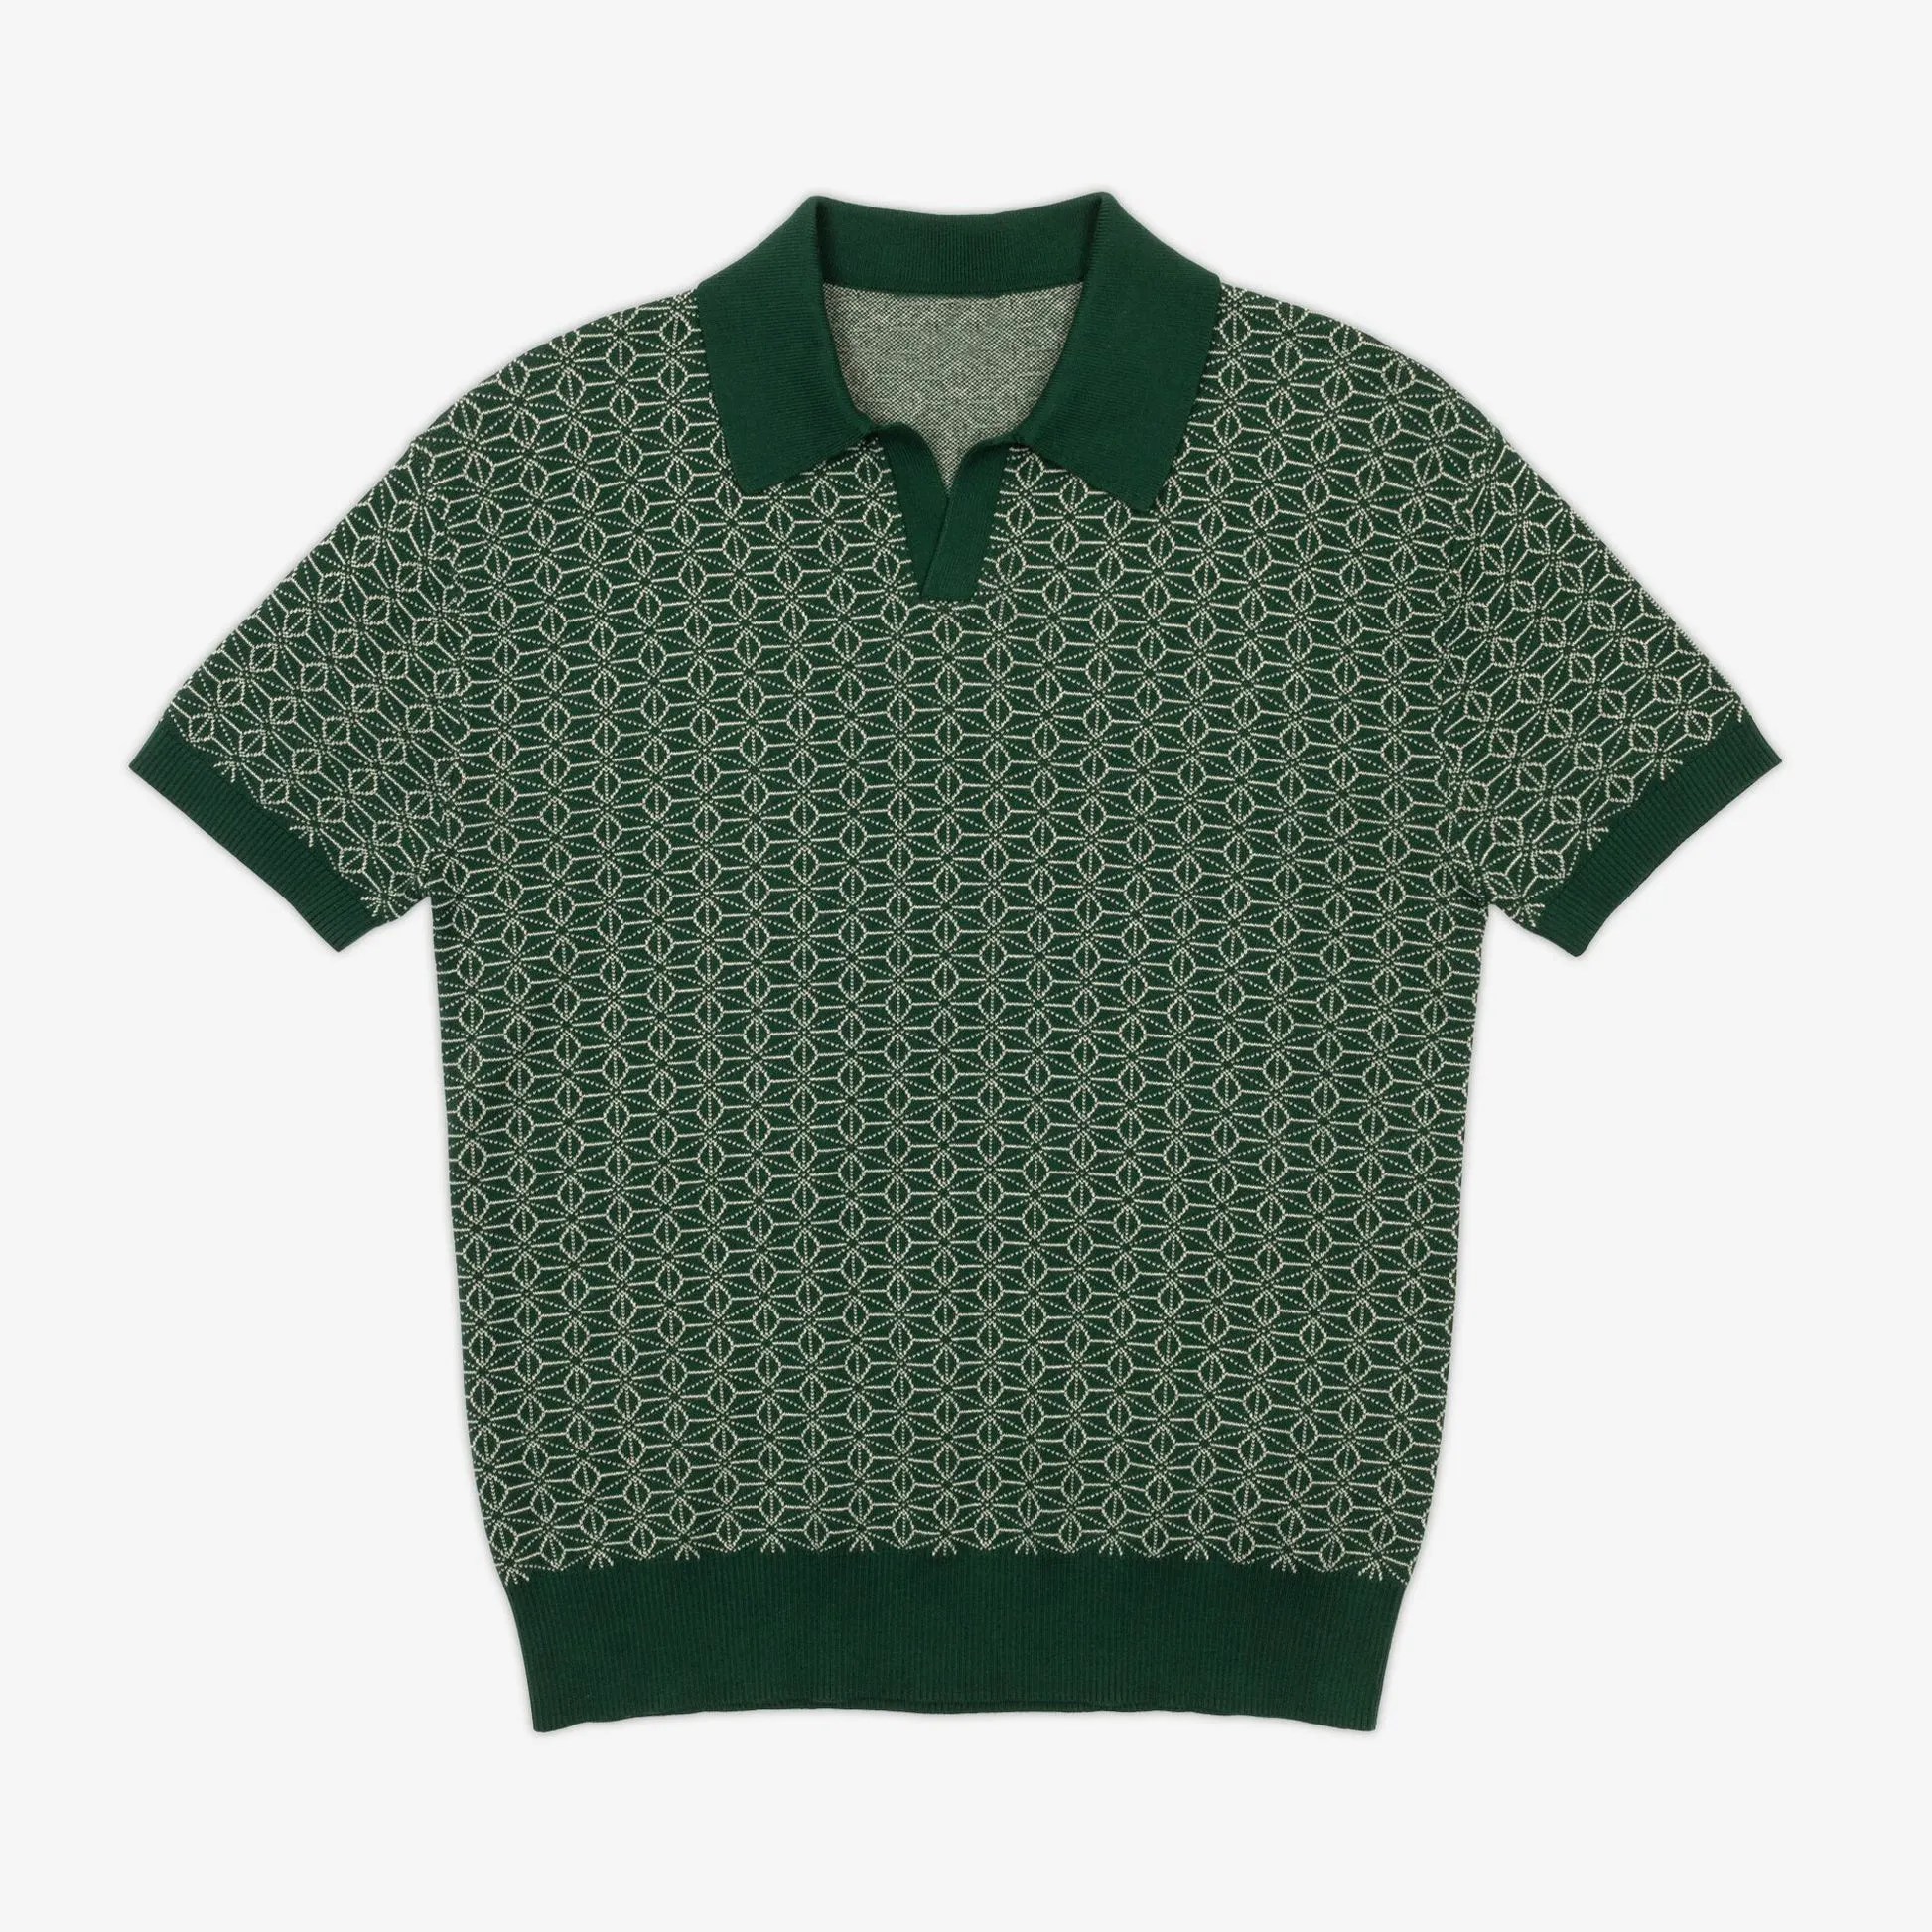 Individuelles OEM gestrickt Jacquard-logo gestrickt Polo Baumwolle-Hemden kurze Ärmel pullover übergroße Strickwarenhemden für Herren